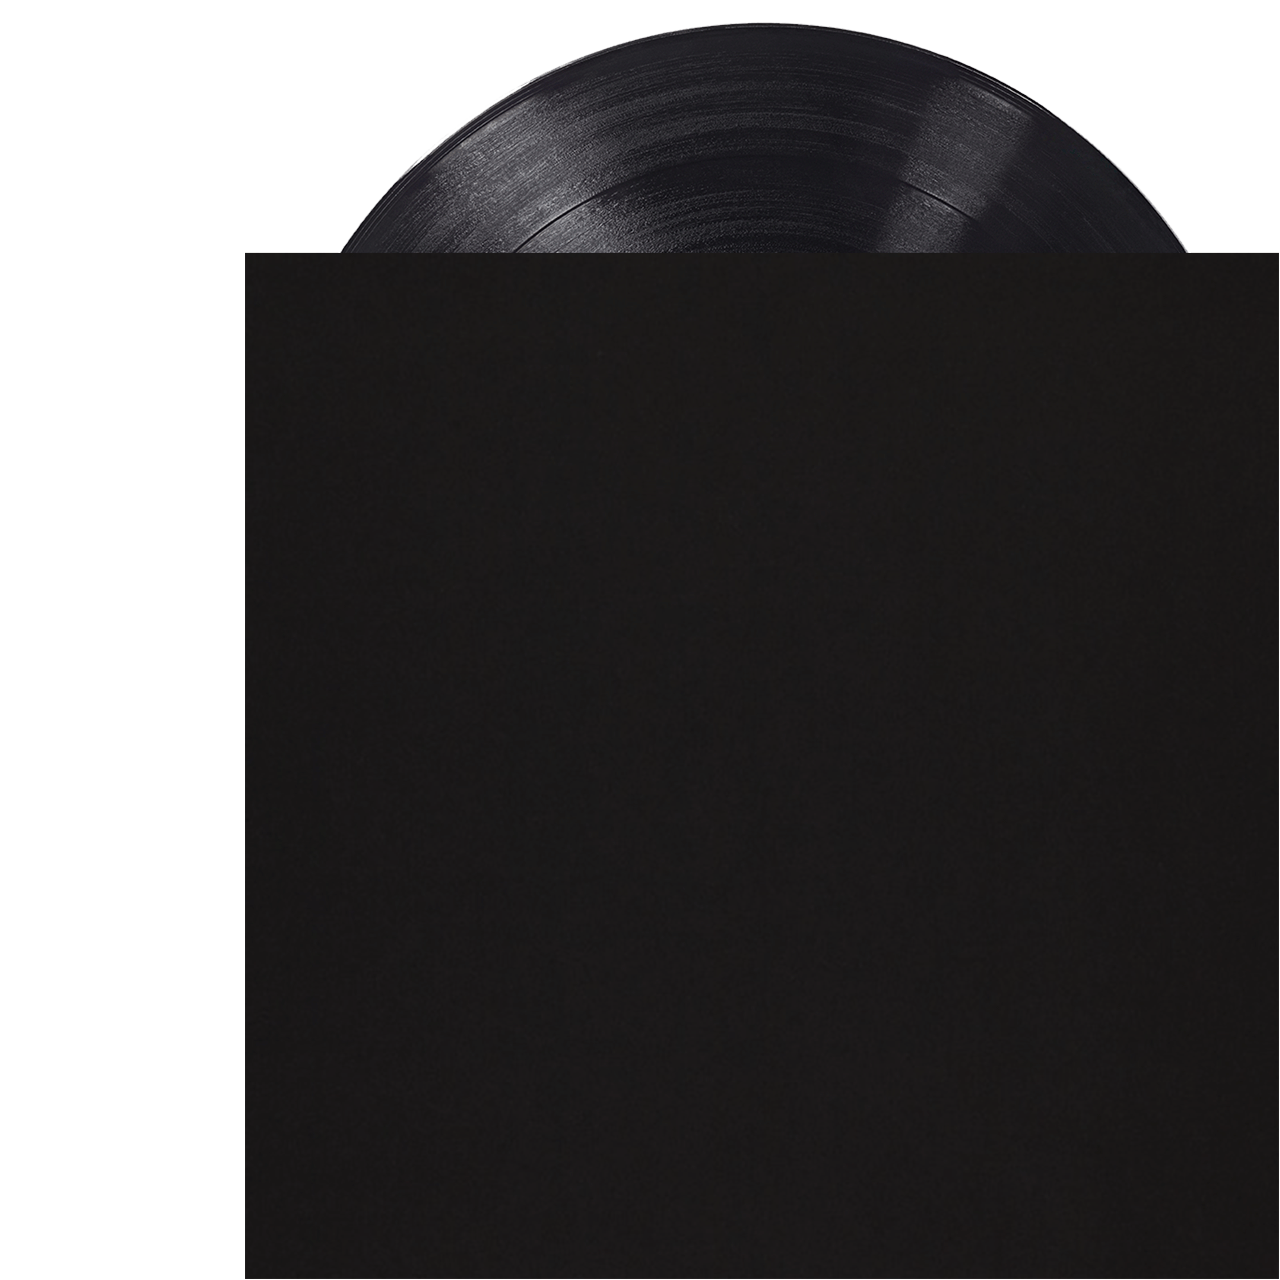 Black Paper Inner Sleeve for 12 Vinyl Records 100pk - High Quality